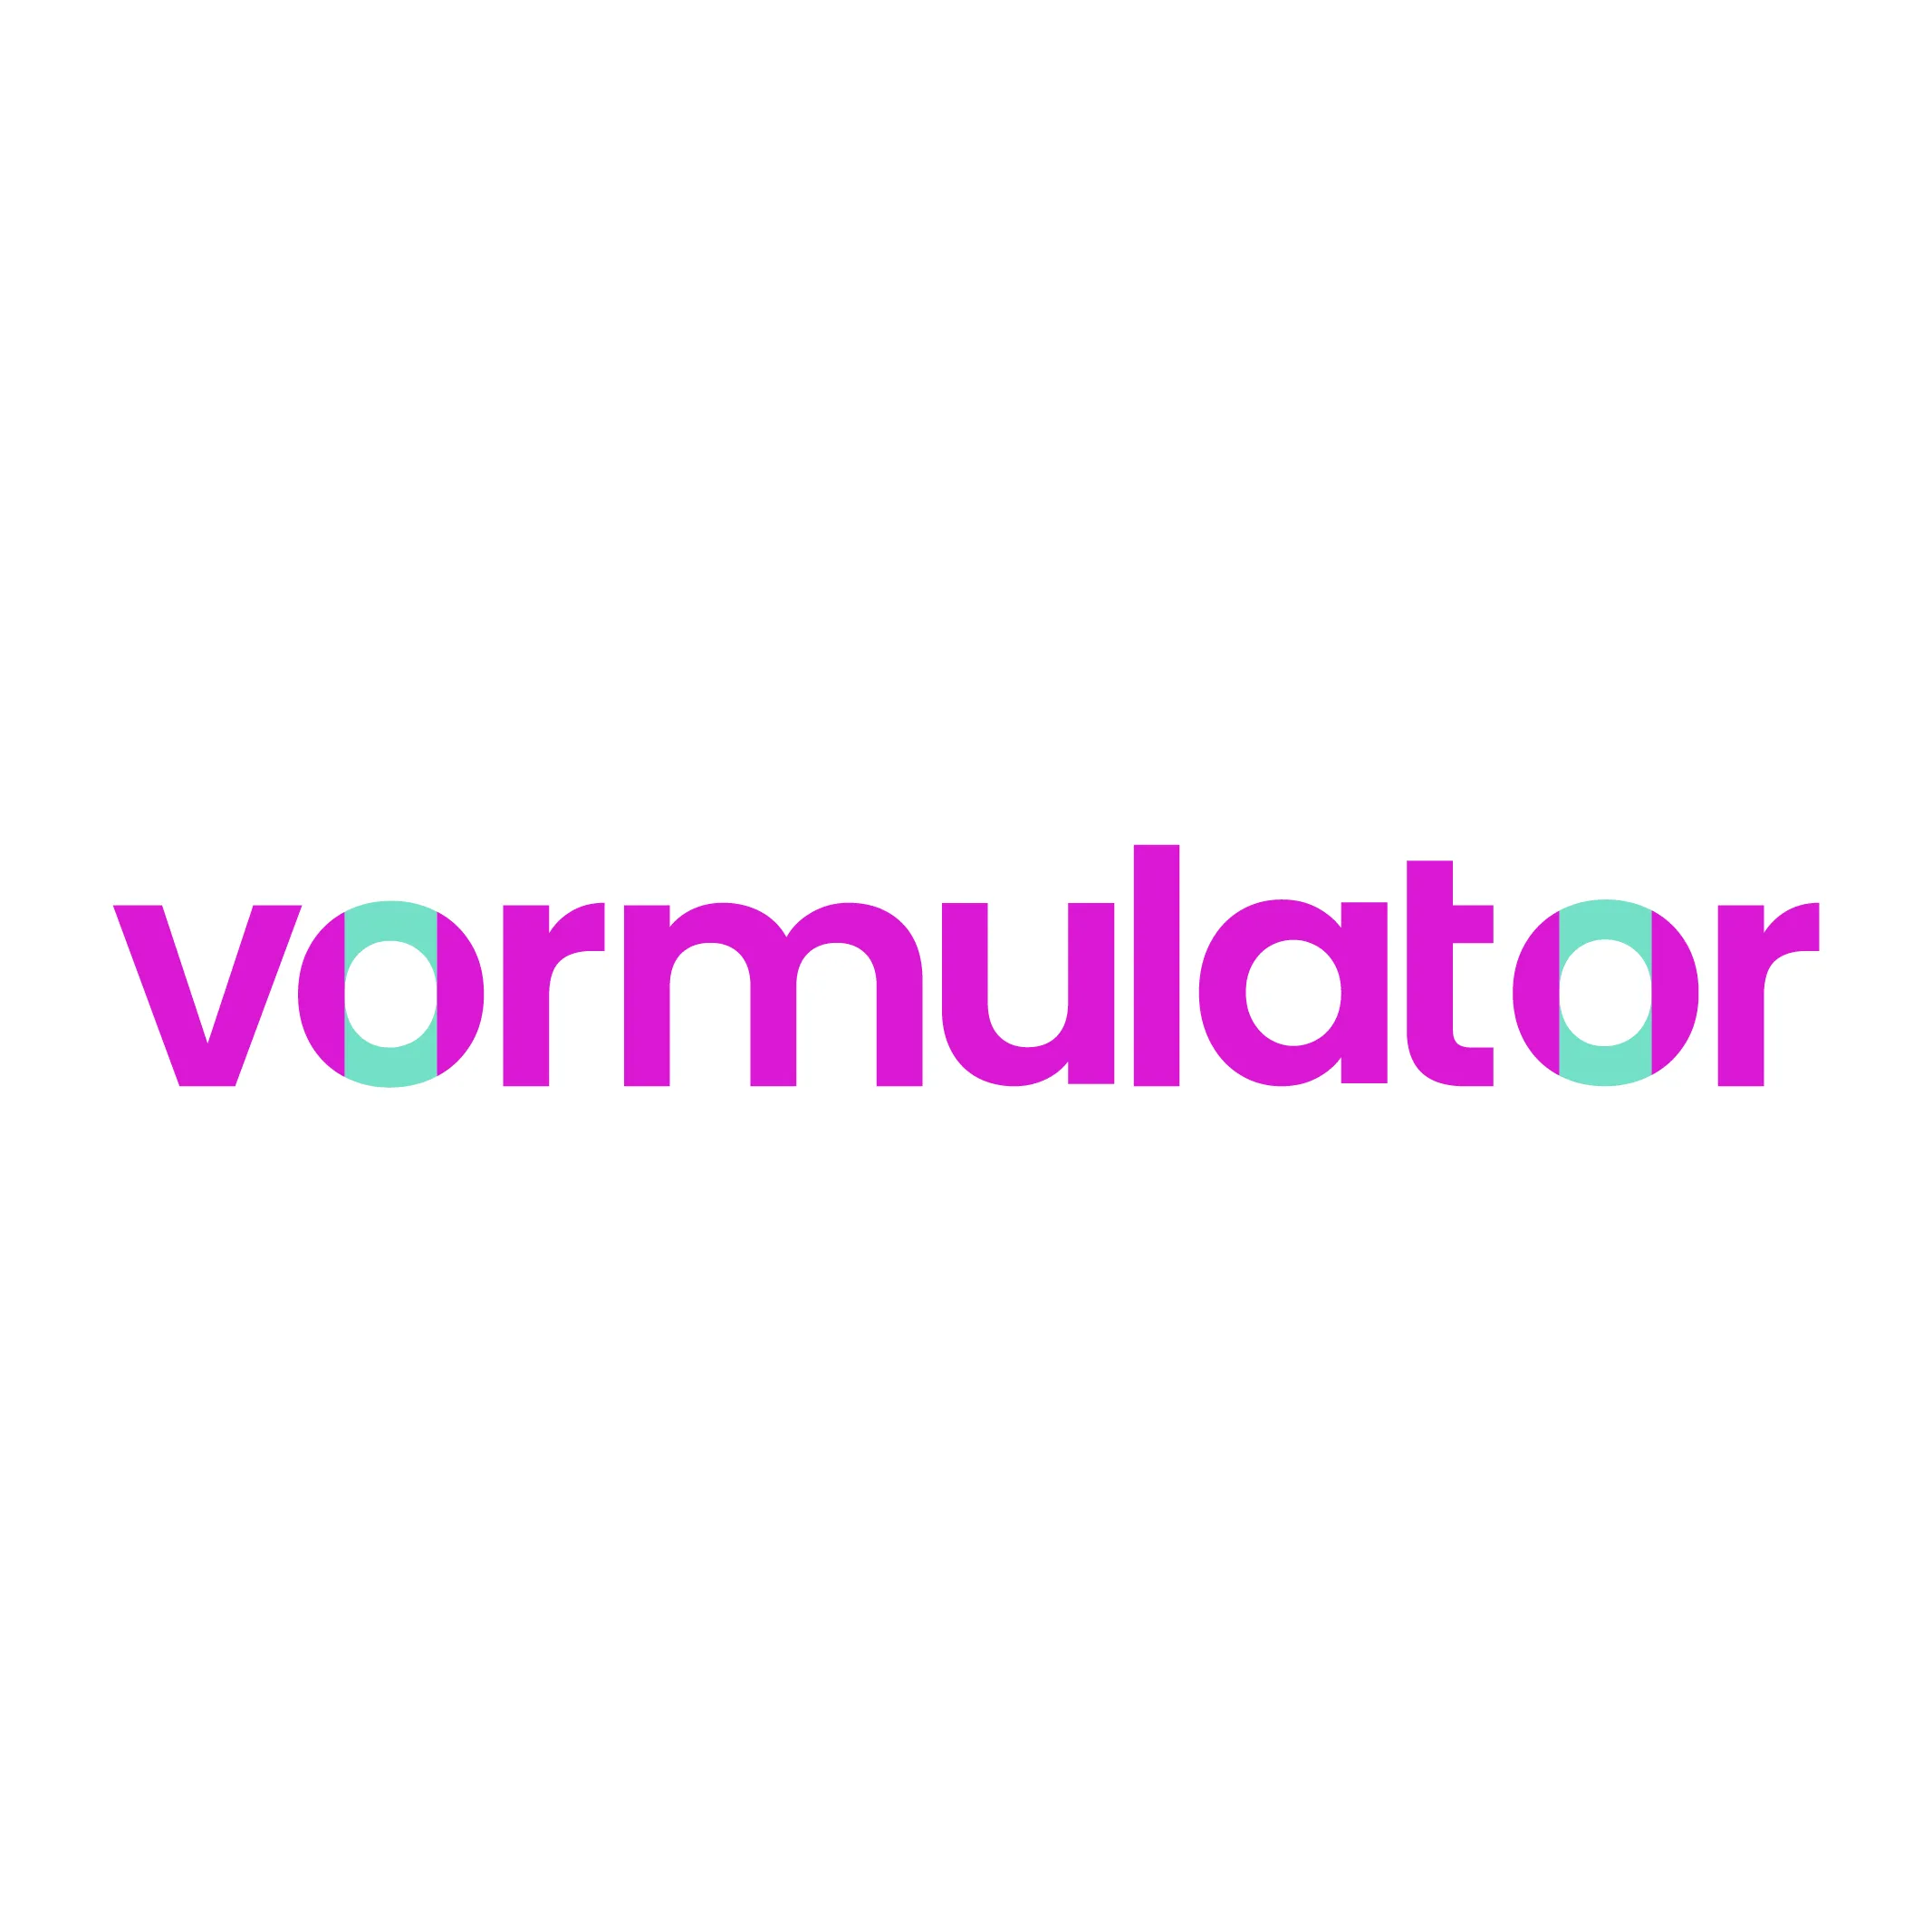 Vormulator-Indonesia